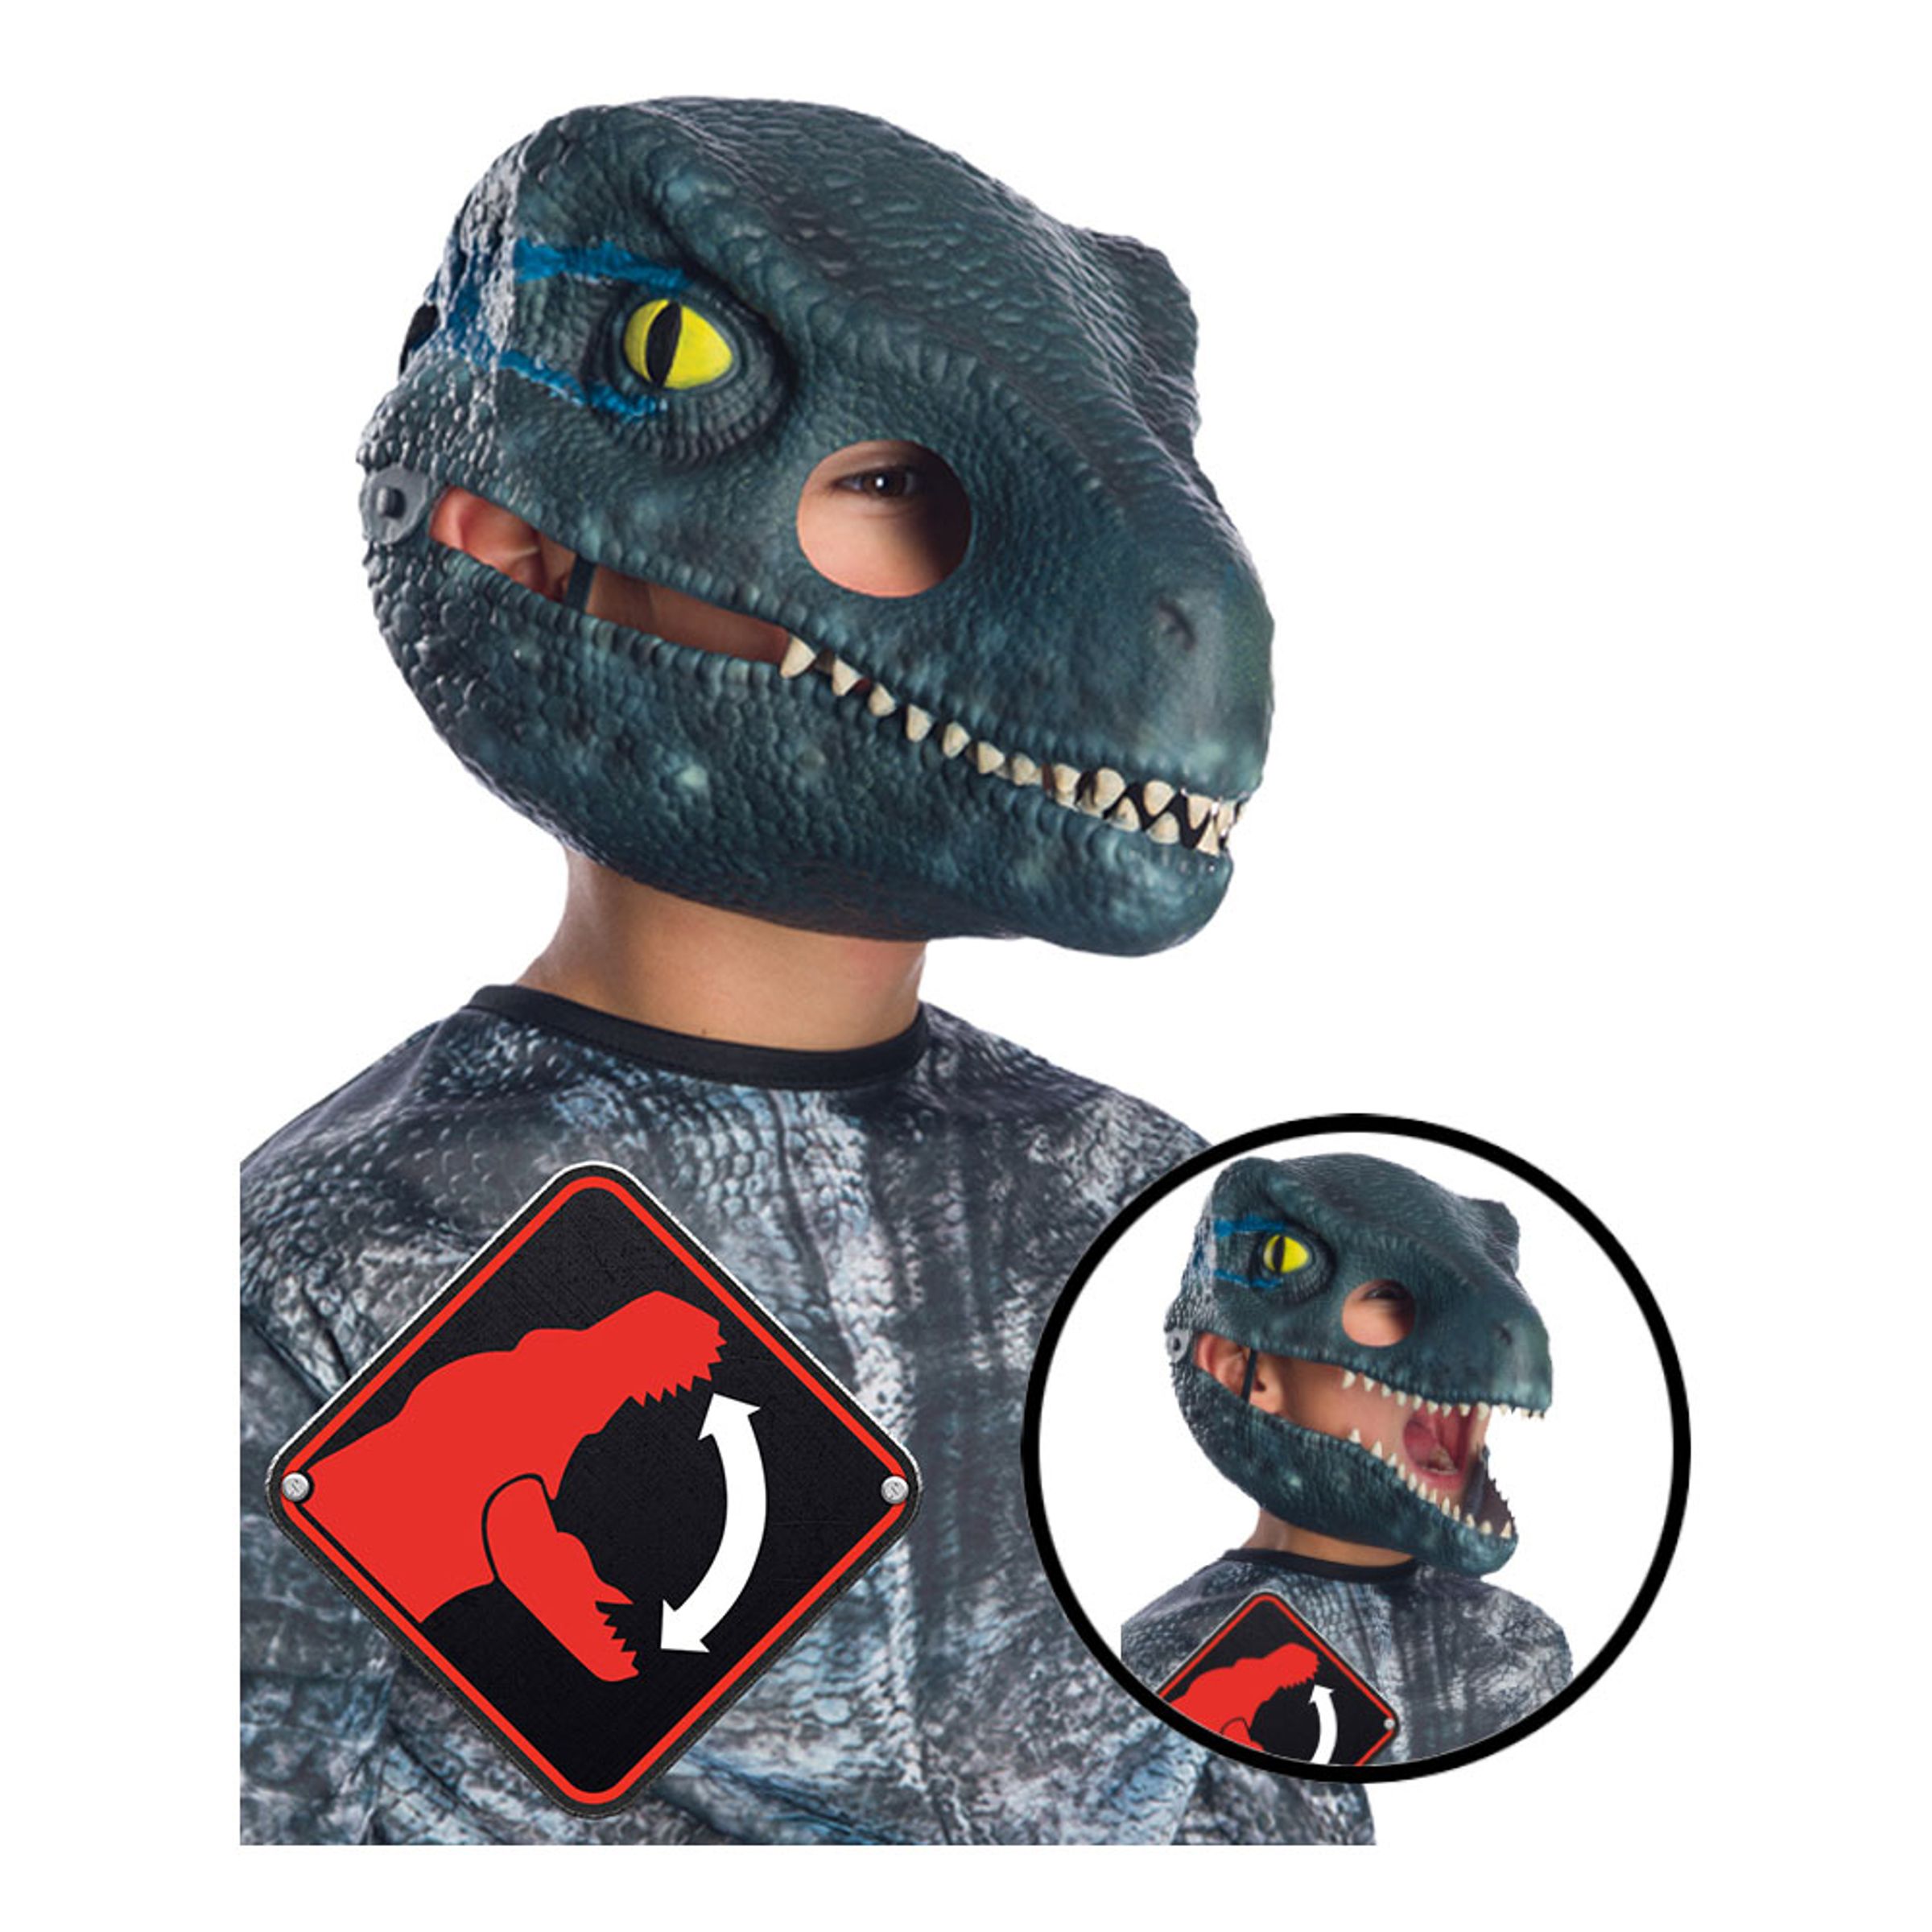 Velociraptor dräkter - Velociraptor Mask för Barn med Rörlig Mun - One size